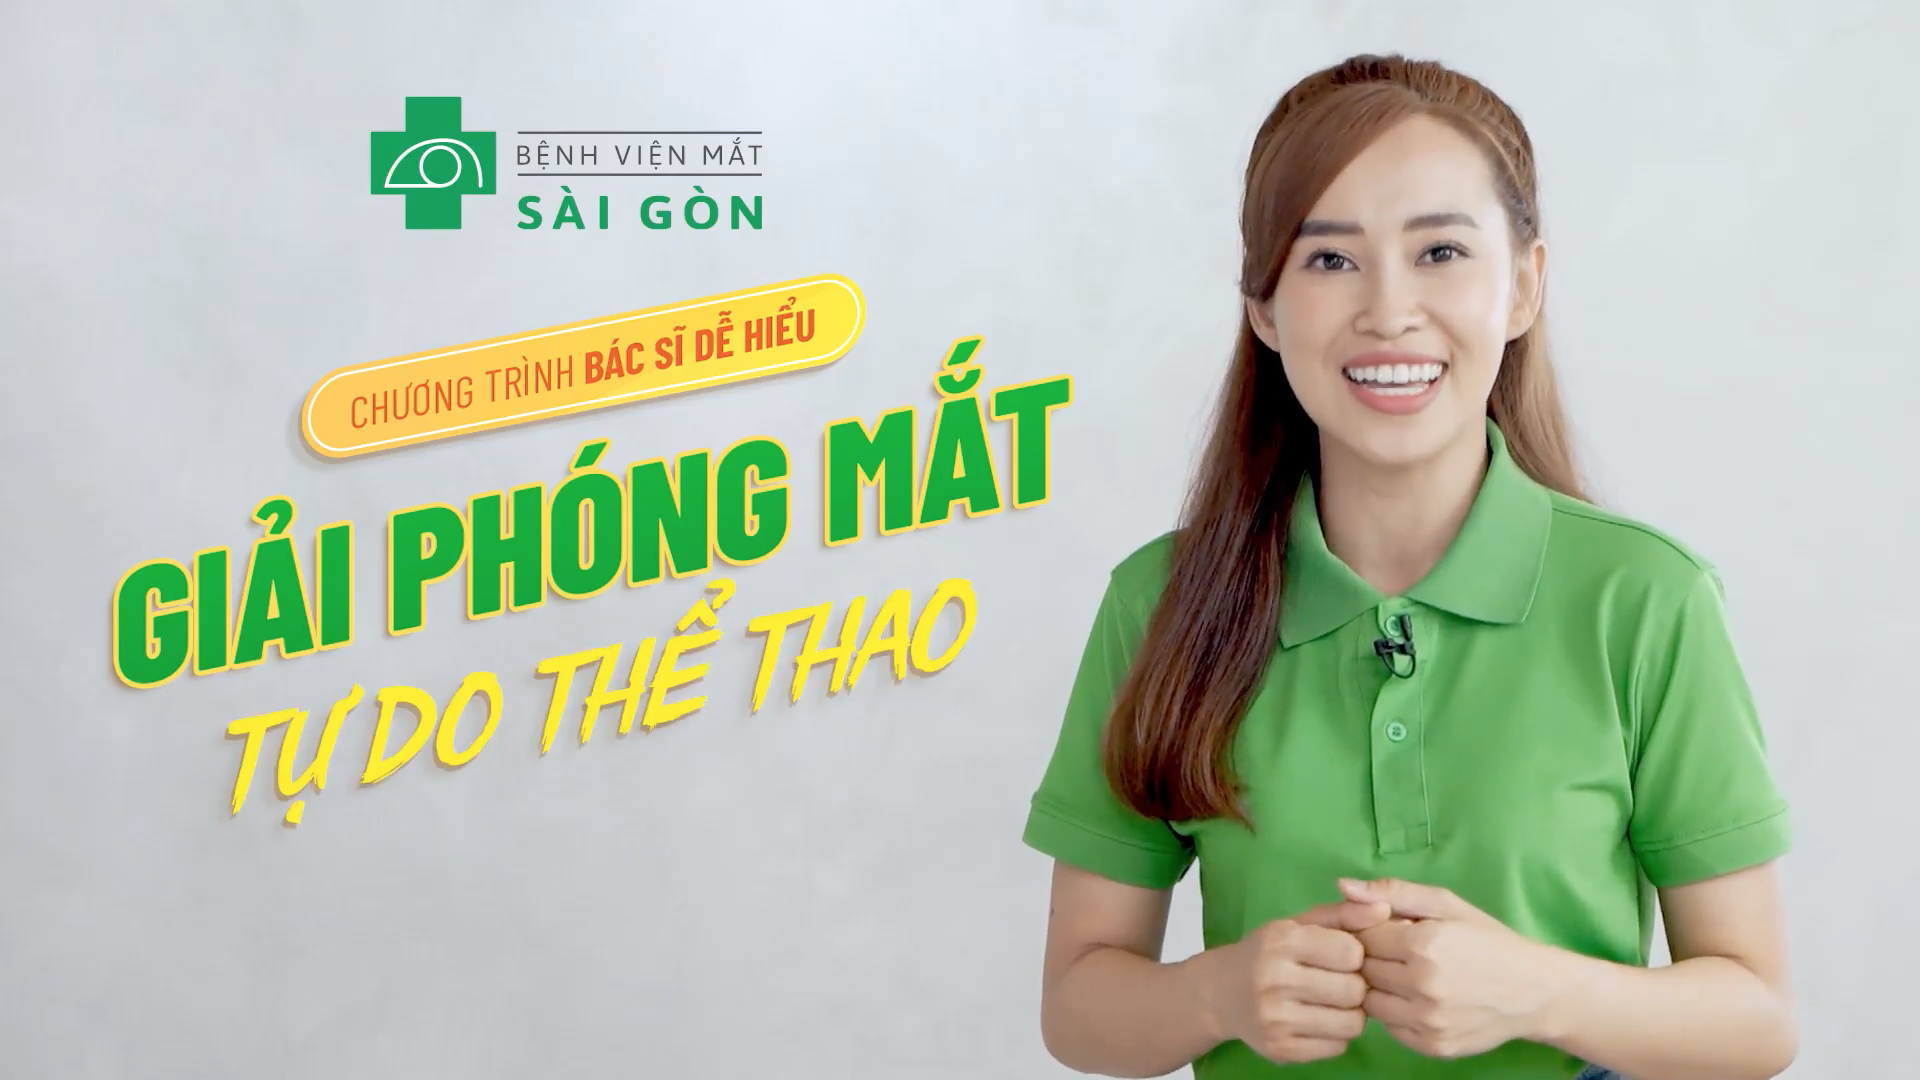 Video “Bác sĩ dễ hiểu” 2022 từ Mắt Sài Gòn tiếp tục ghi điểm với hội cận thị - 1